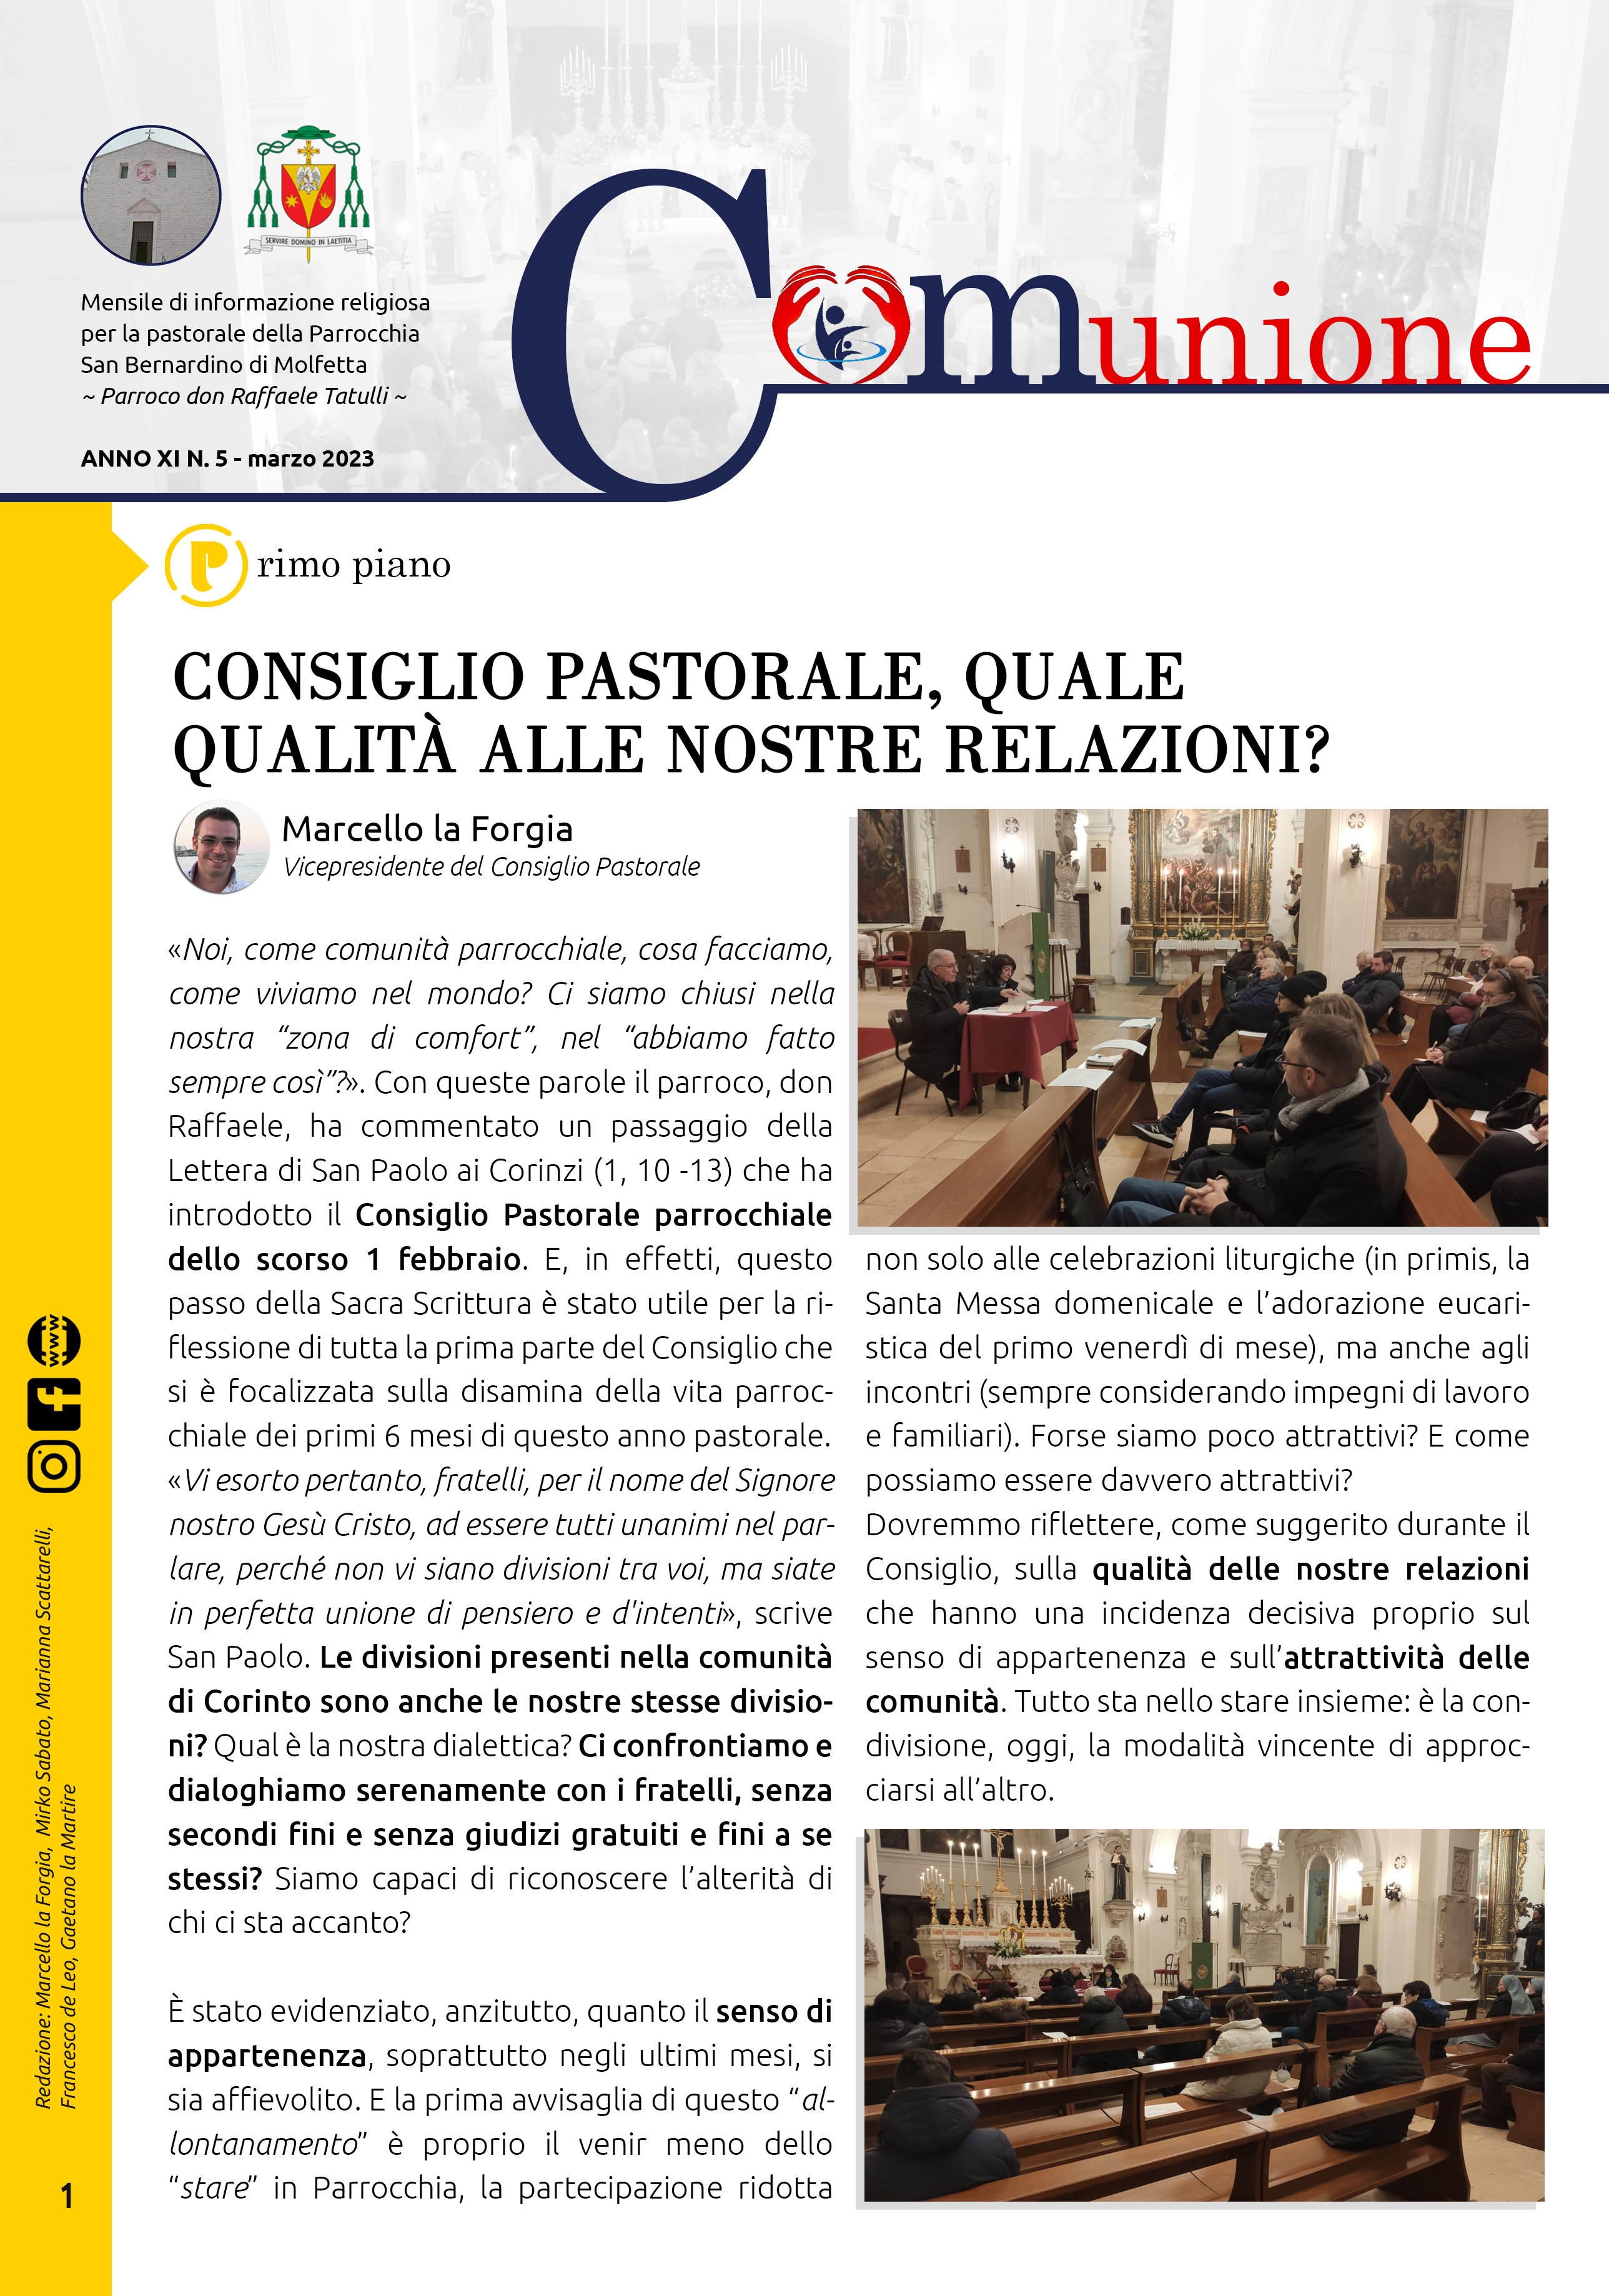 parrocchia san bernardino molfetta - giornale parrocchiale comunione marzo 2023